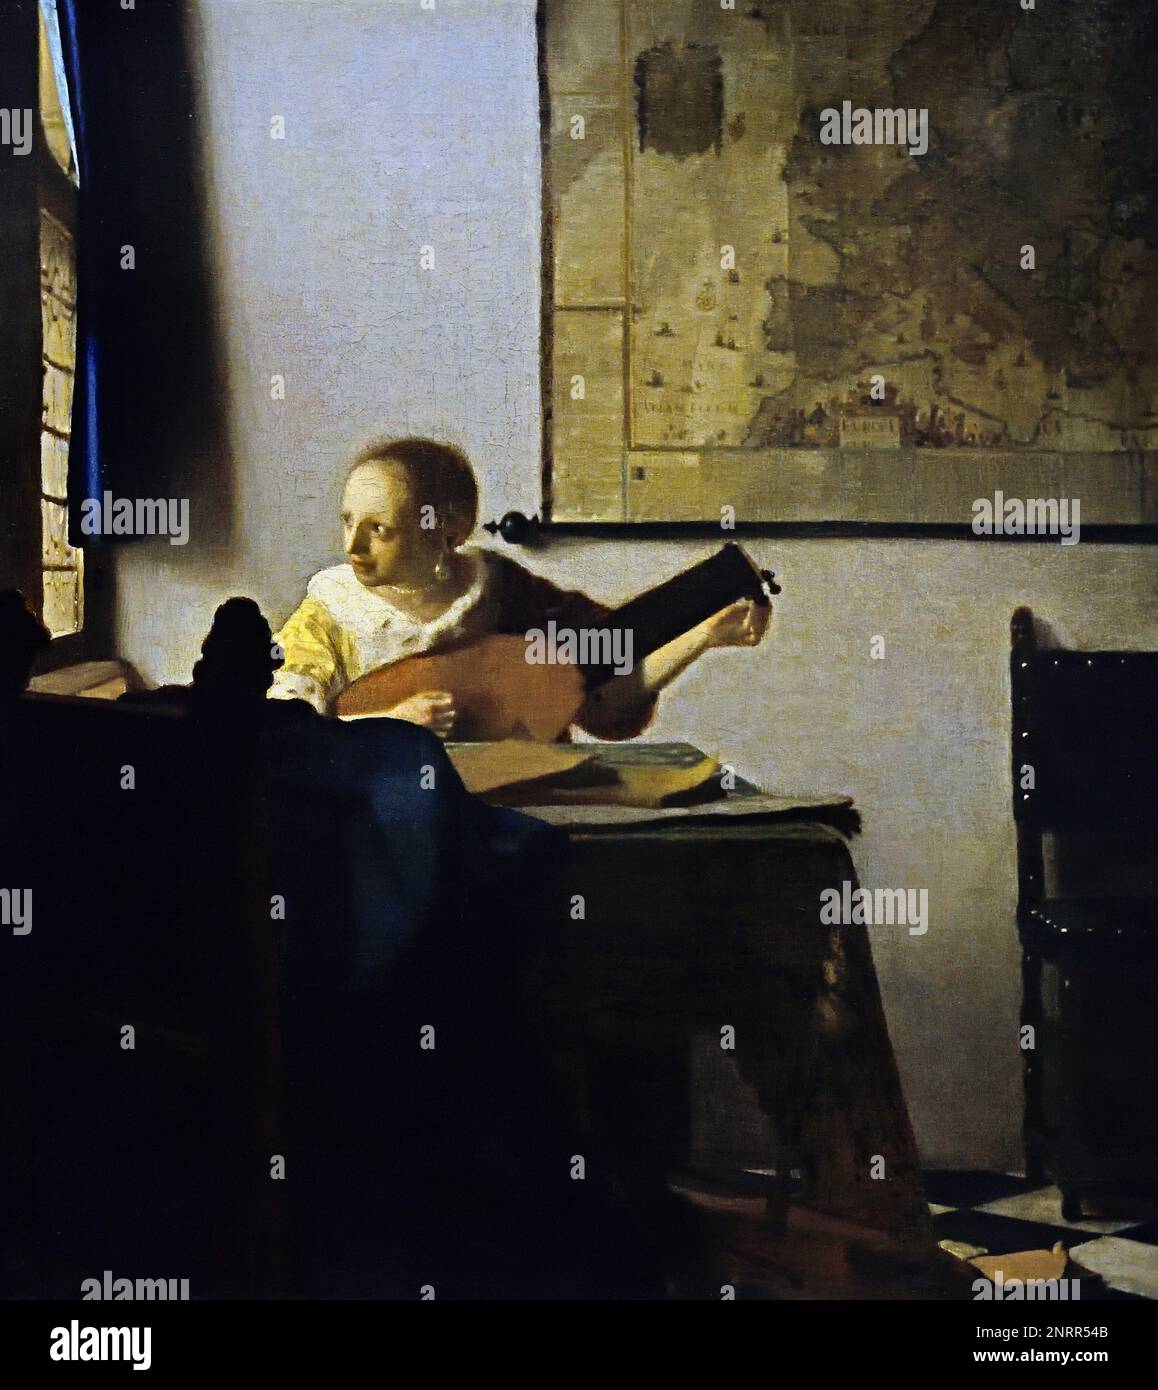 Young Woman with a Lute 1662-1664 von Johannes Vermeer oder Jan Vermeer 1632 - 1675, Delft, Niederlande, Niederländisch, Holland, (Holländischer Maler im Goldenen Zeitalter, einer der größten Maler des 17. Jahrhunderts. Bevorzugte zeitlose, gedämpfte Momente, bleibt rätselhaft, unnachahmliches Farbschema und verwirrender Lichtinhalt) Stockfoto